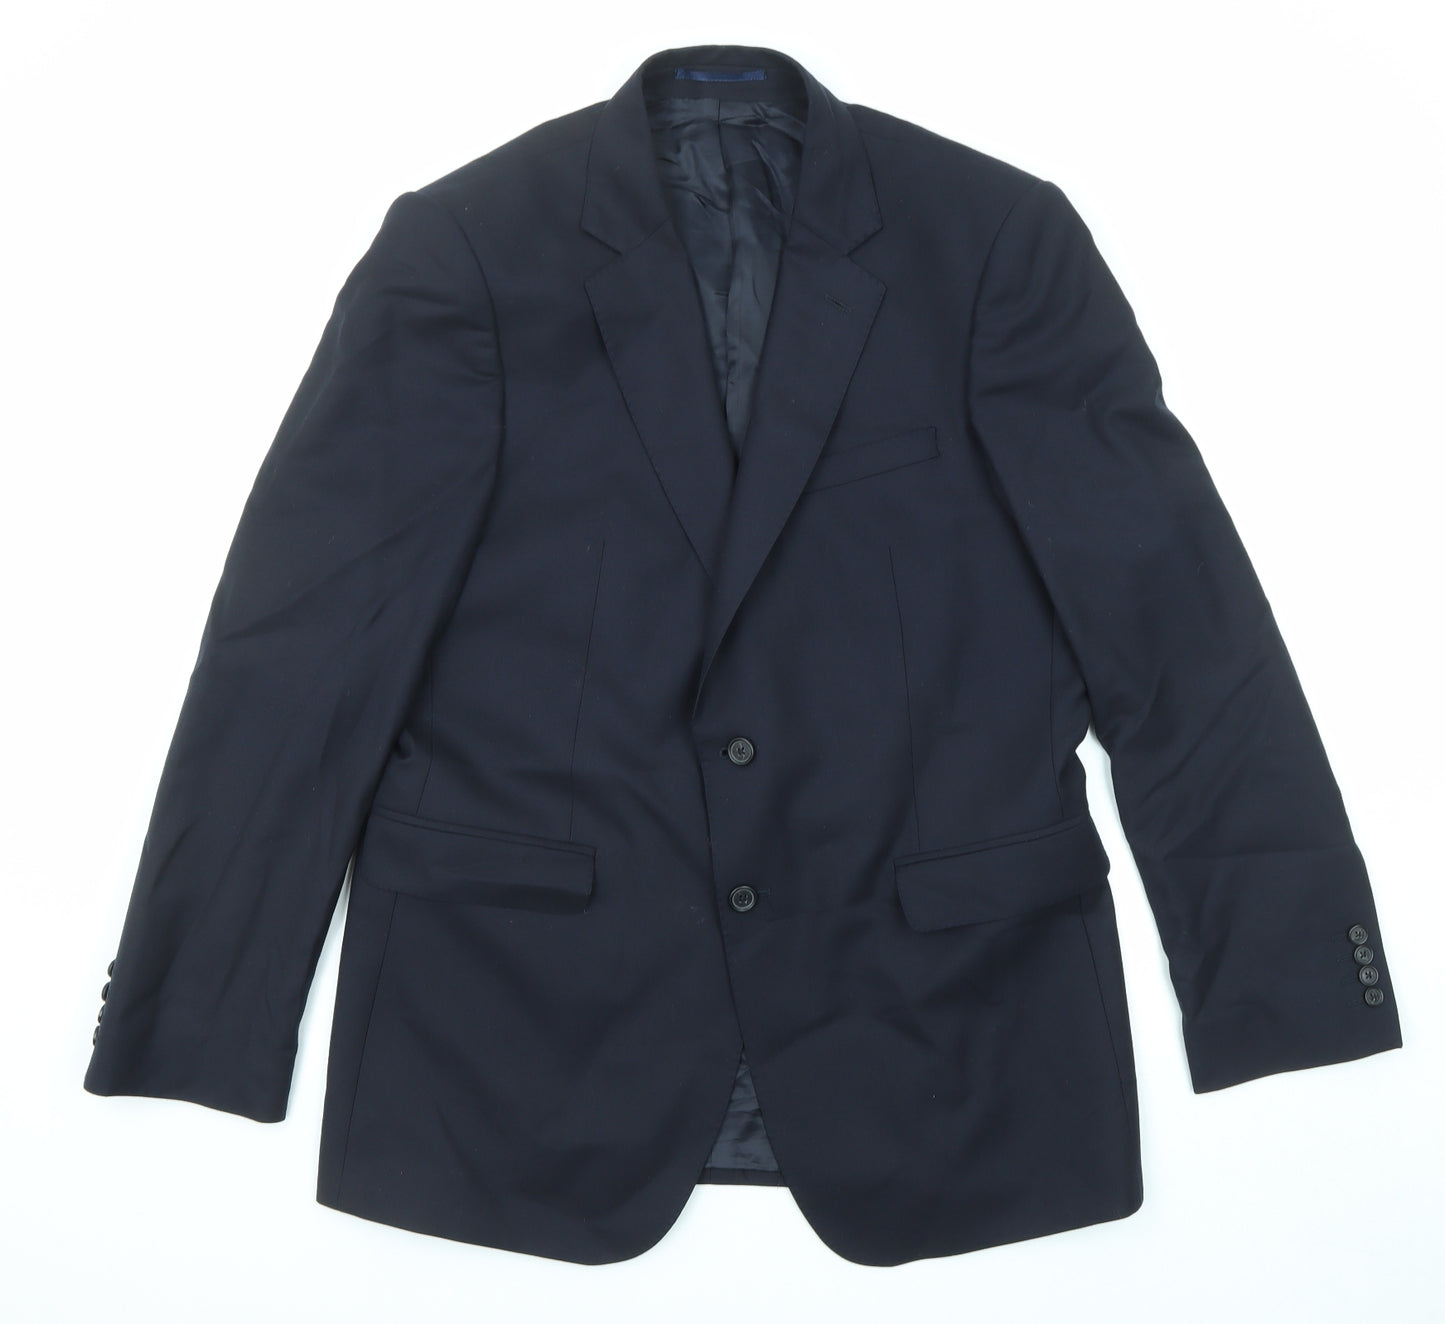 Jaeger Mens Blue Wool Jacket Suit Jacket Size 42 Regular